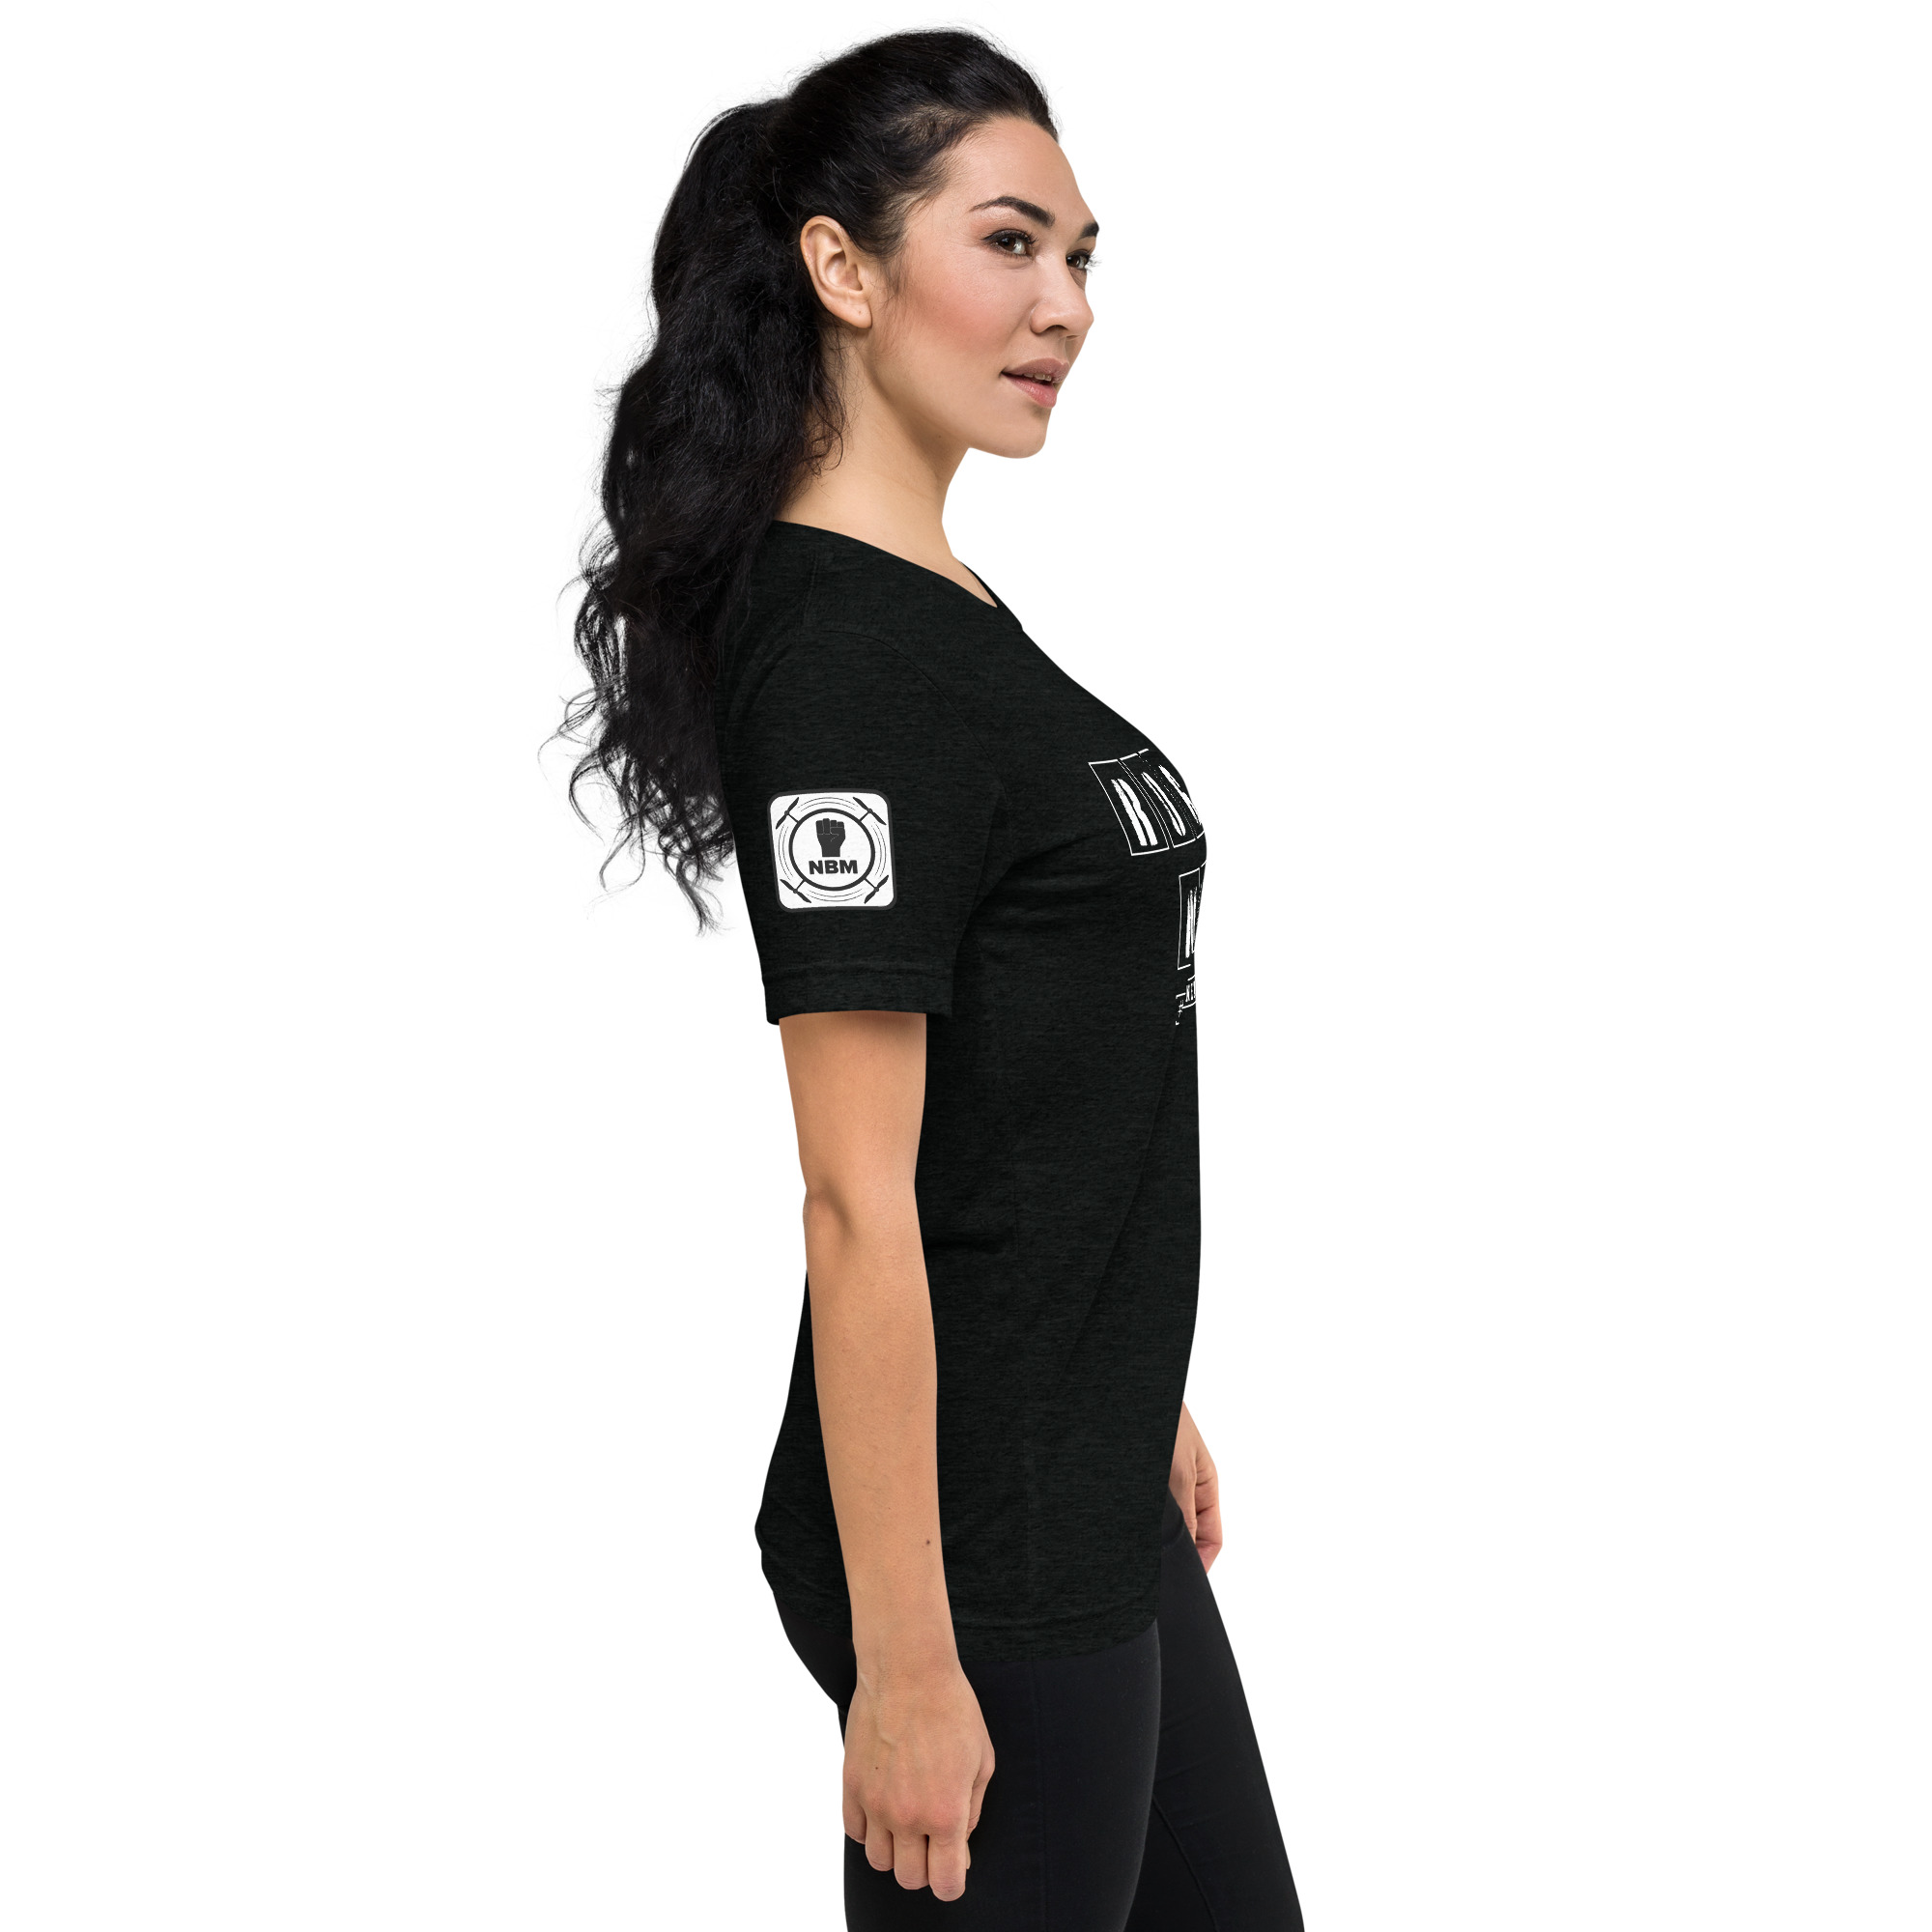 unisex-tri-blend-t-shirt-solid-black-triblend-right-64a5a972bd96b.jpg